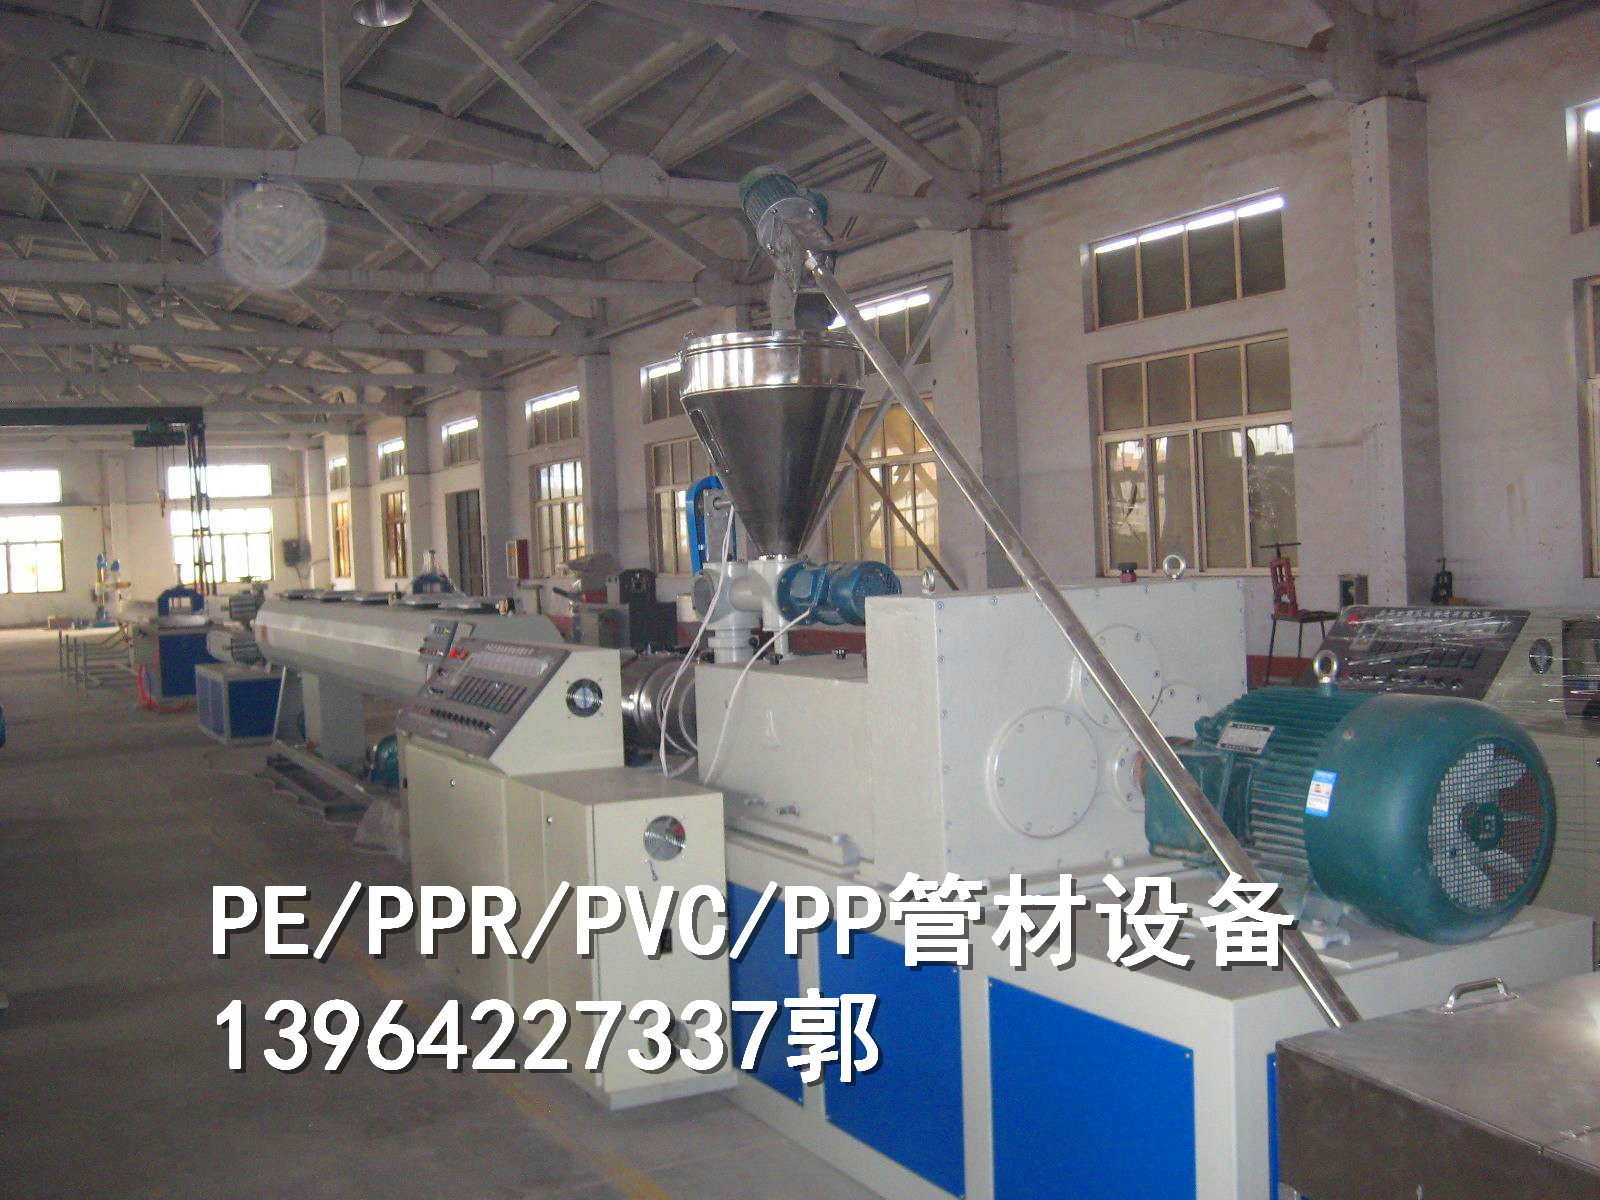 PE/PPR塑料管材设备 PE/PPR塑料管材设备厂家 PPR/PE塑料管材设备价格